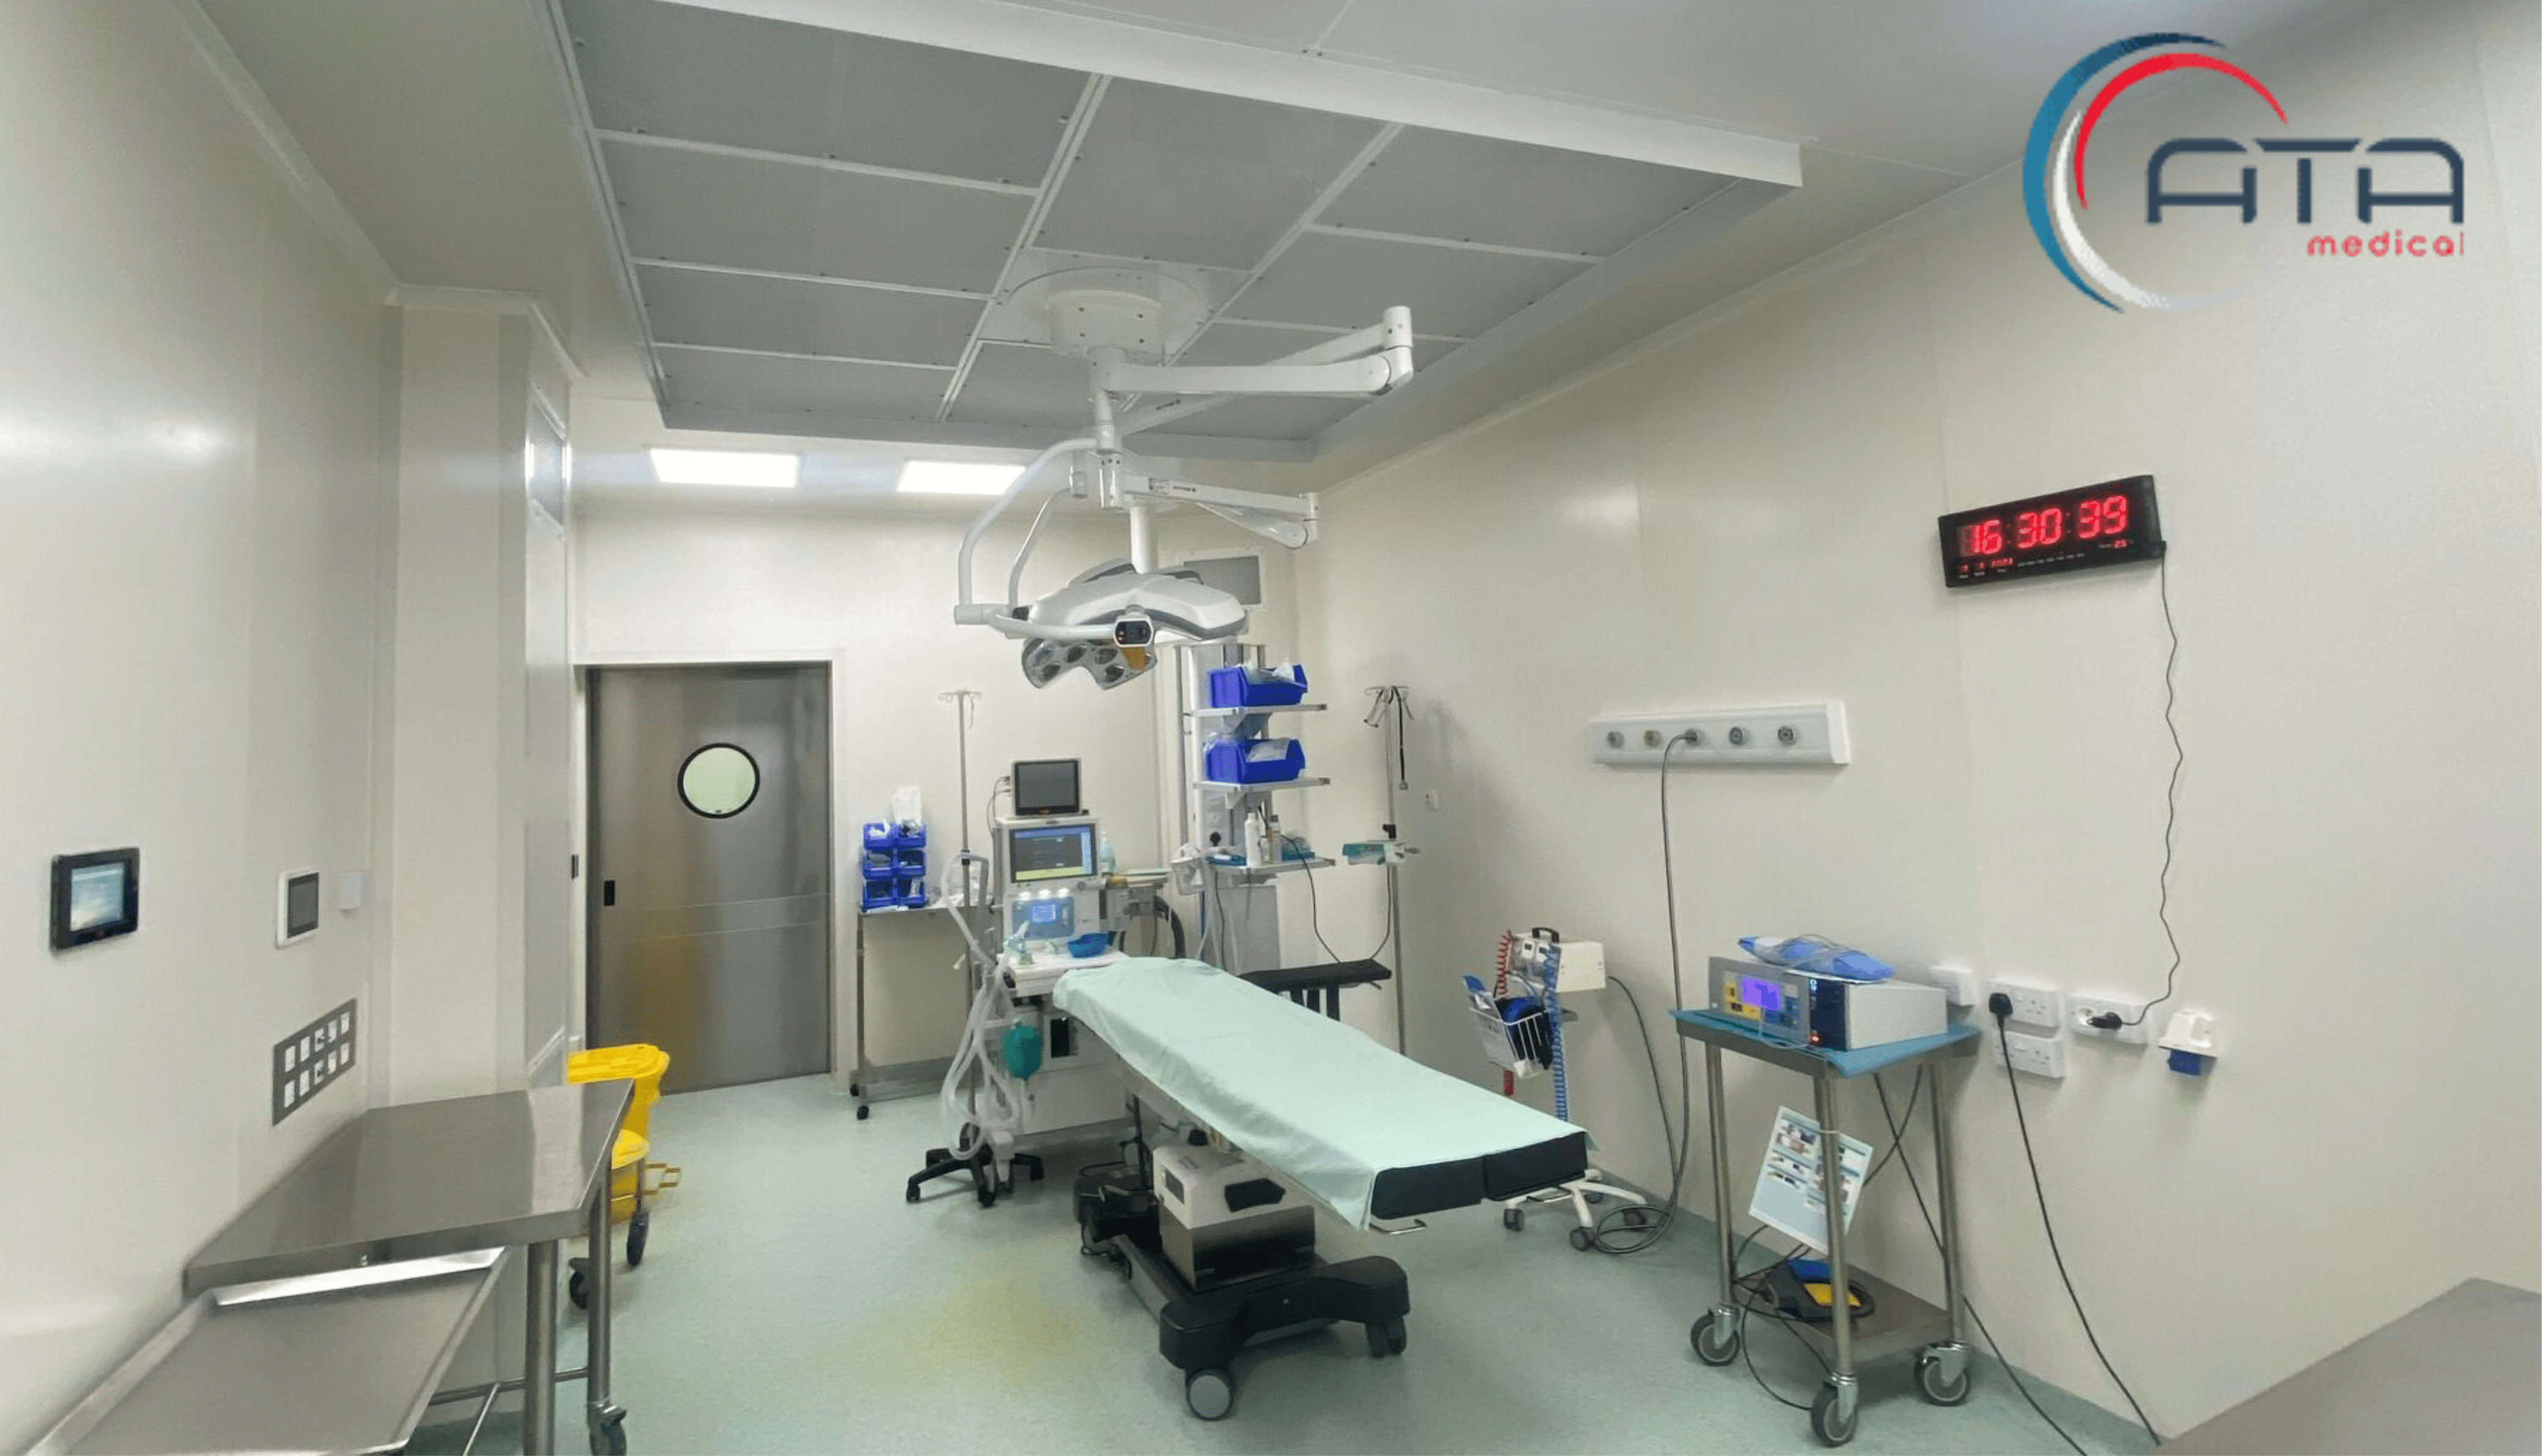 Ata Medical air treatment Mauritius